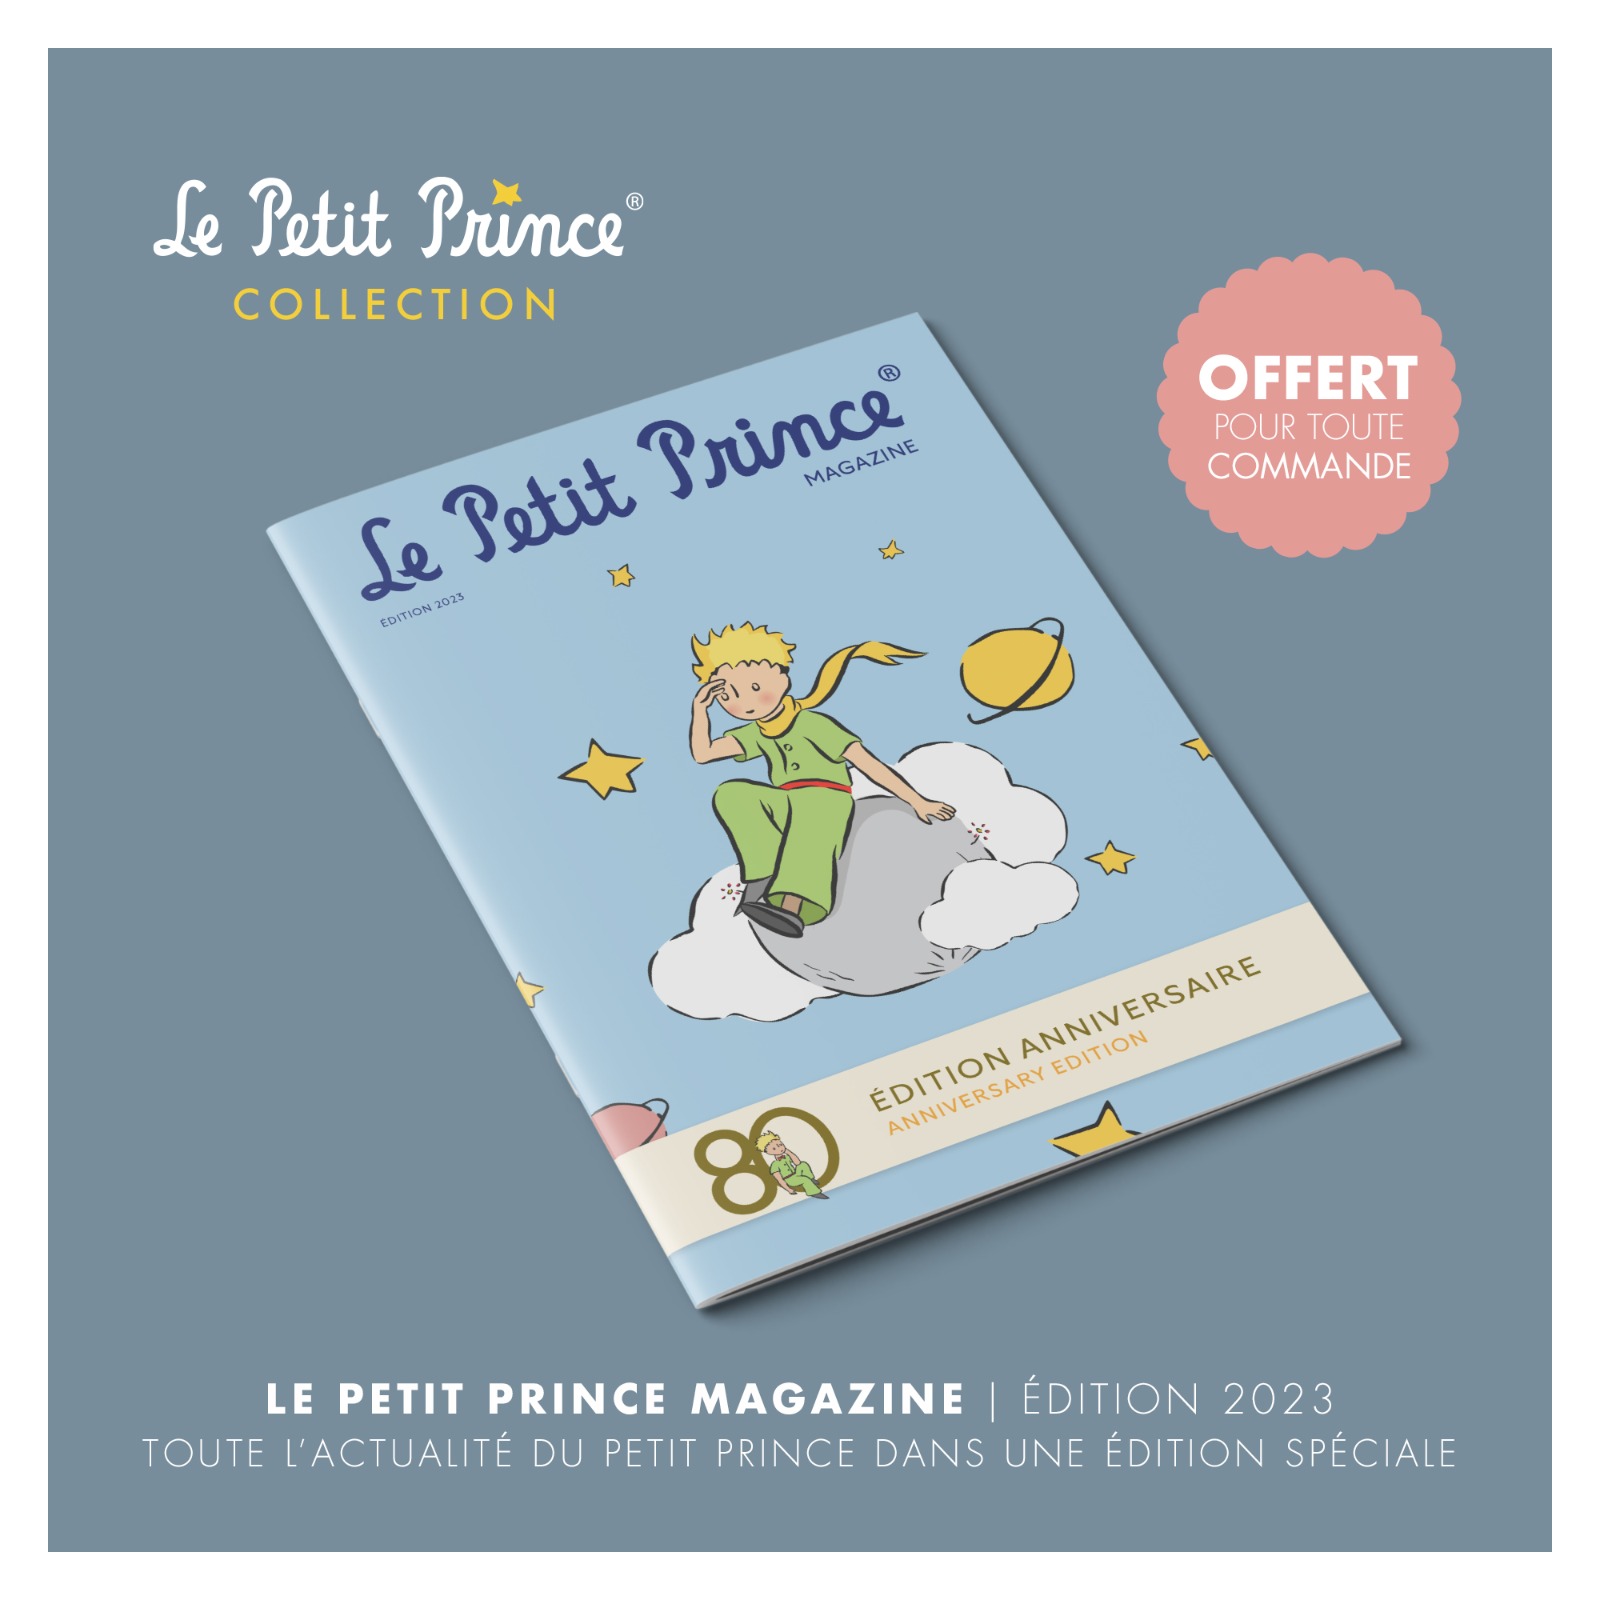 Recevez gratuitement le magazine Le Petit Prince !